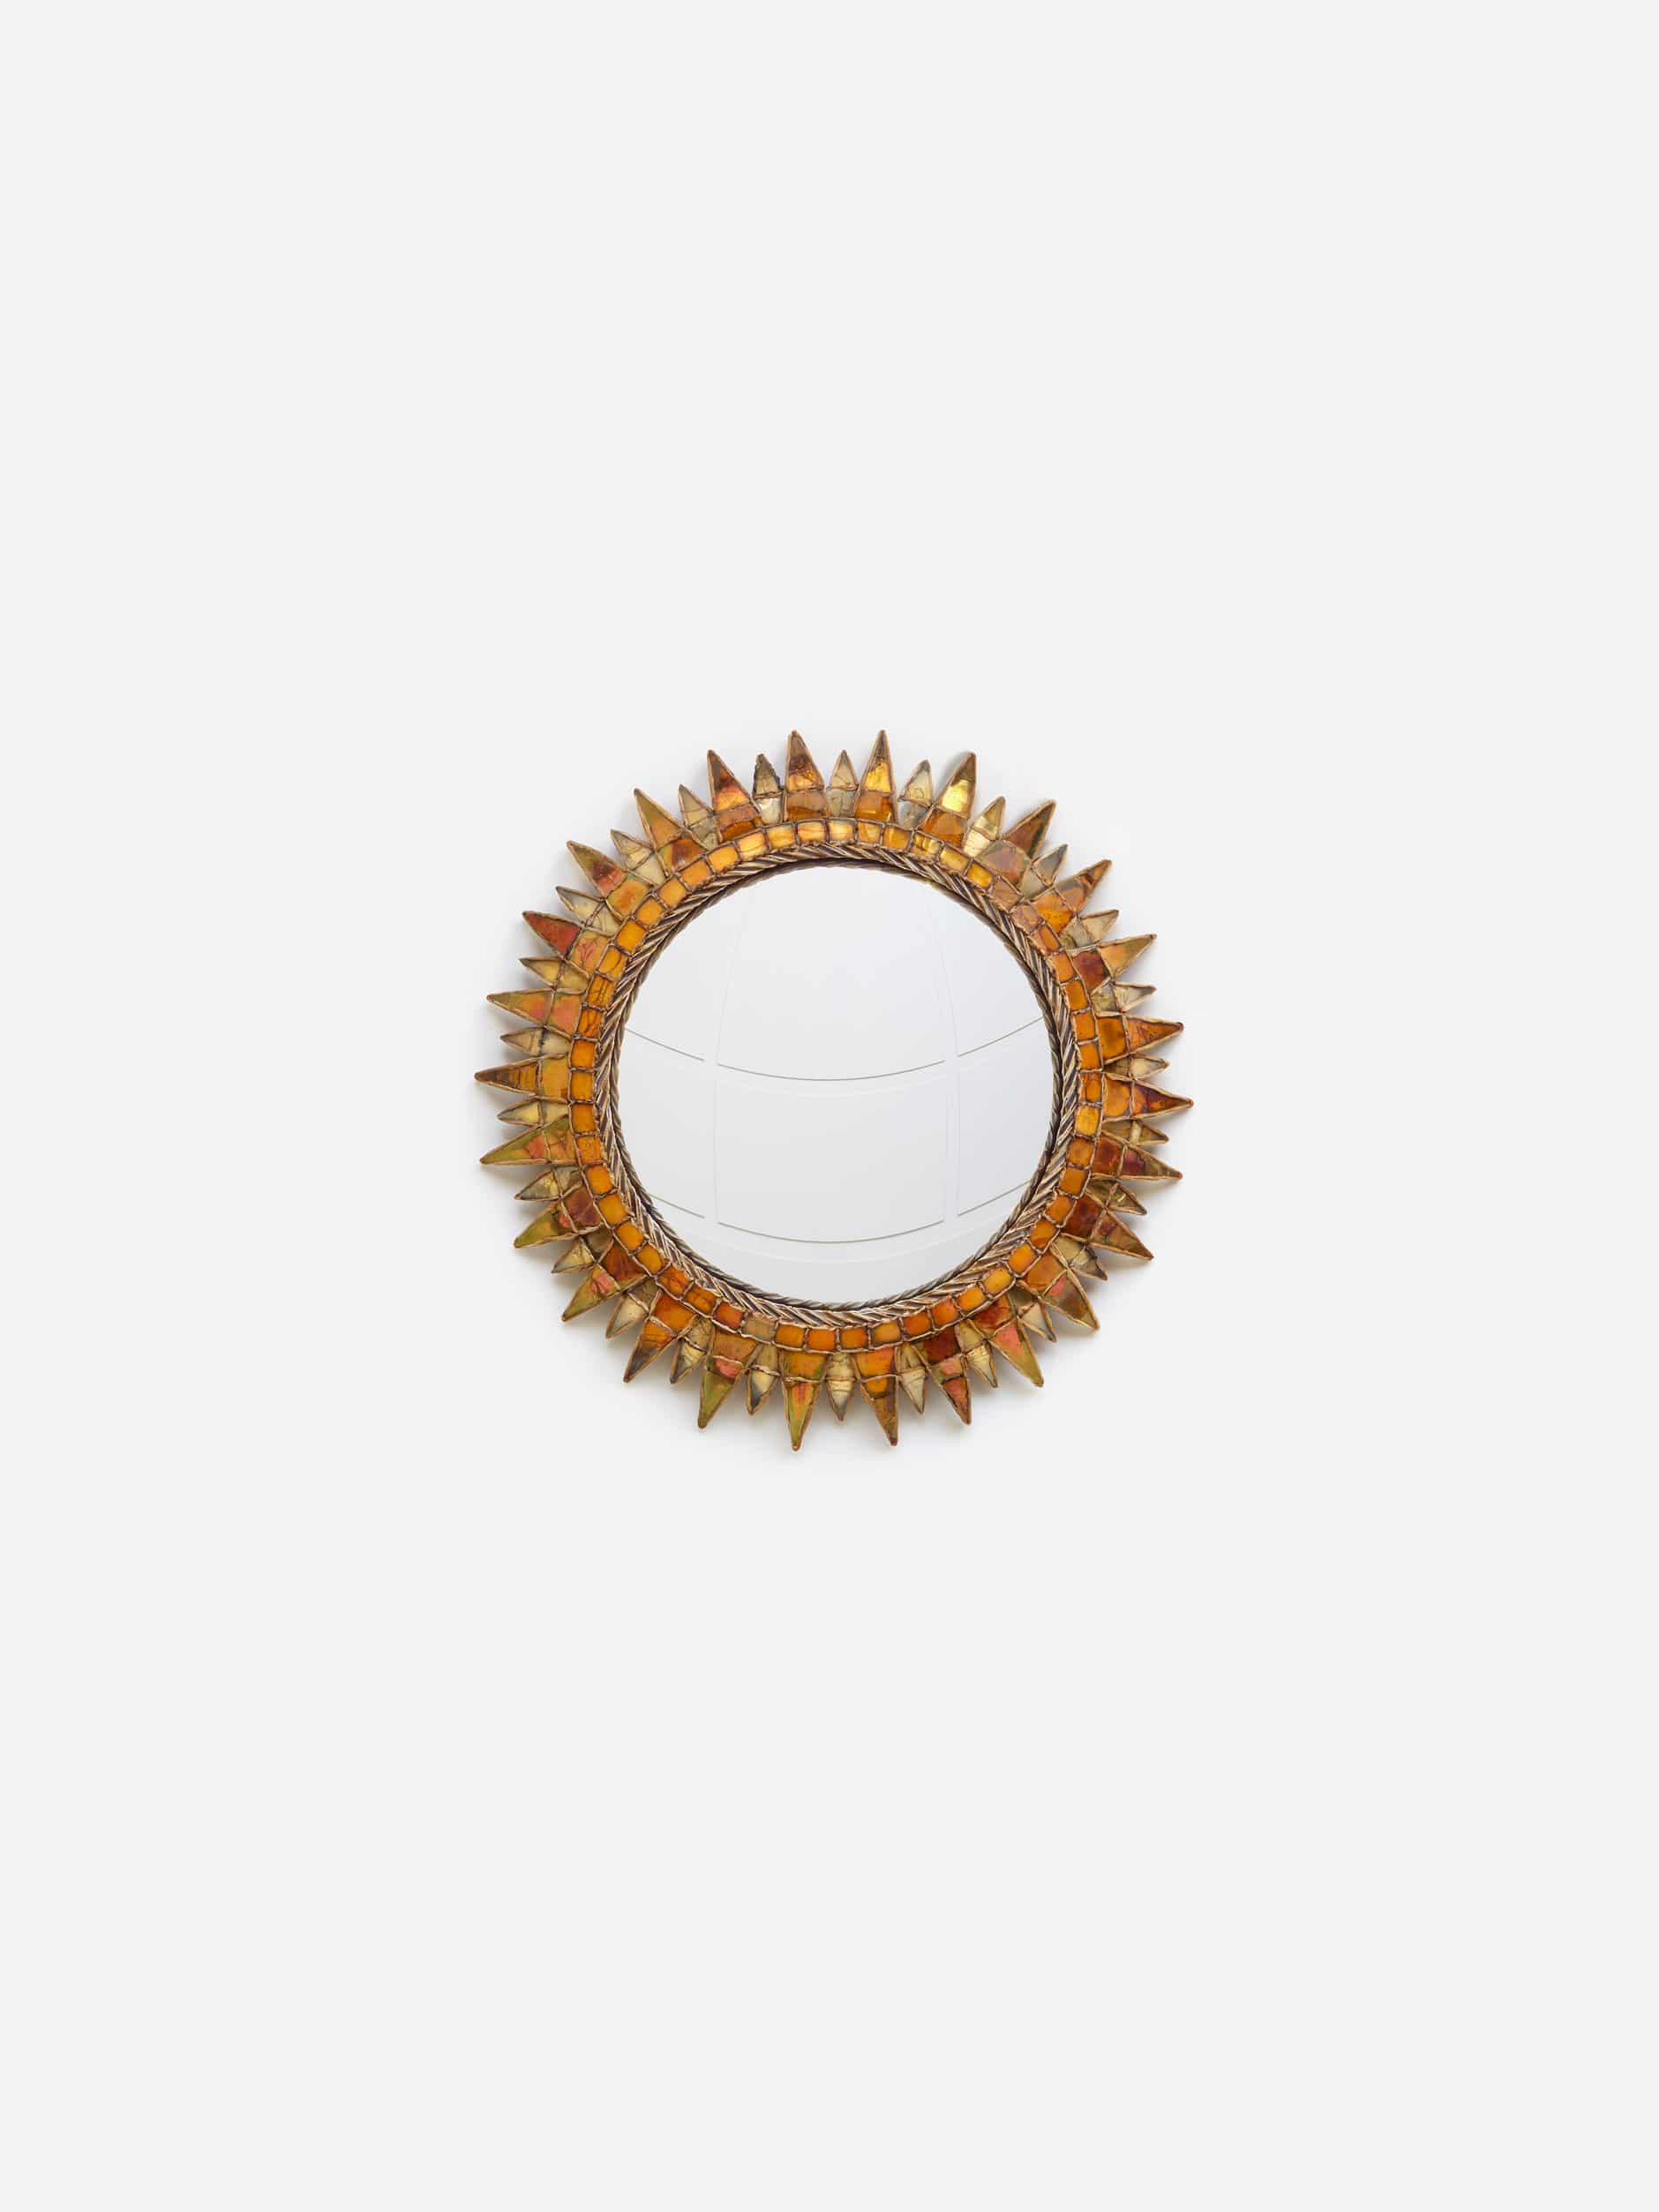 Line Vautrin, Gilded and orange “Soleil à pointes n°3” mirror, vue 01